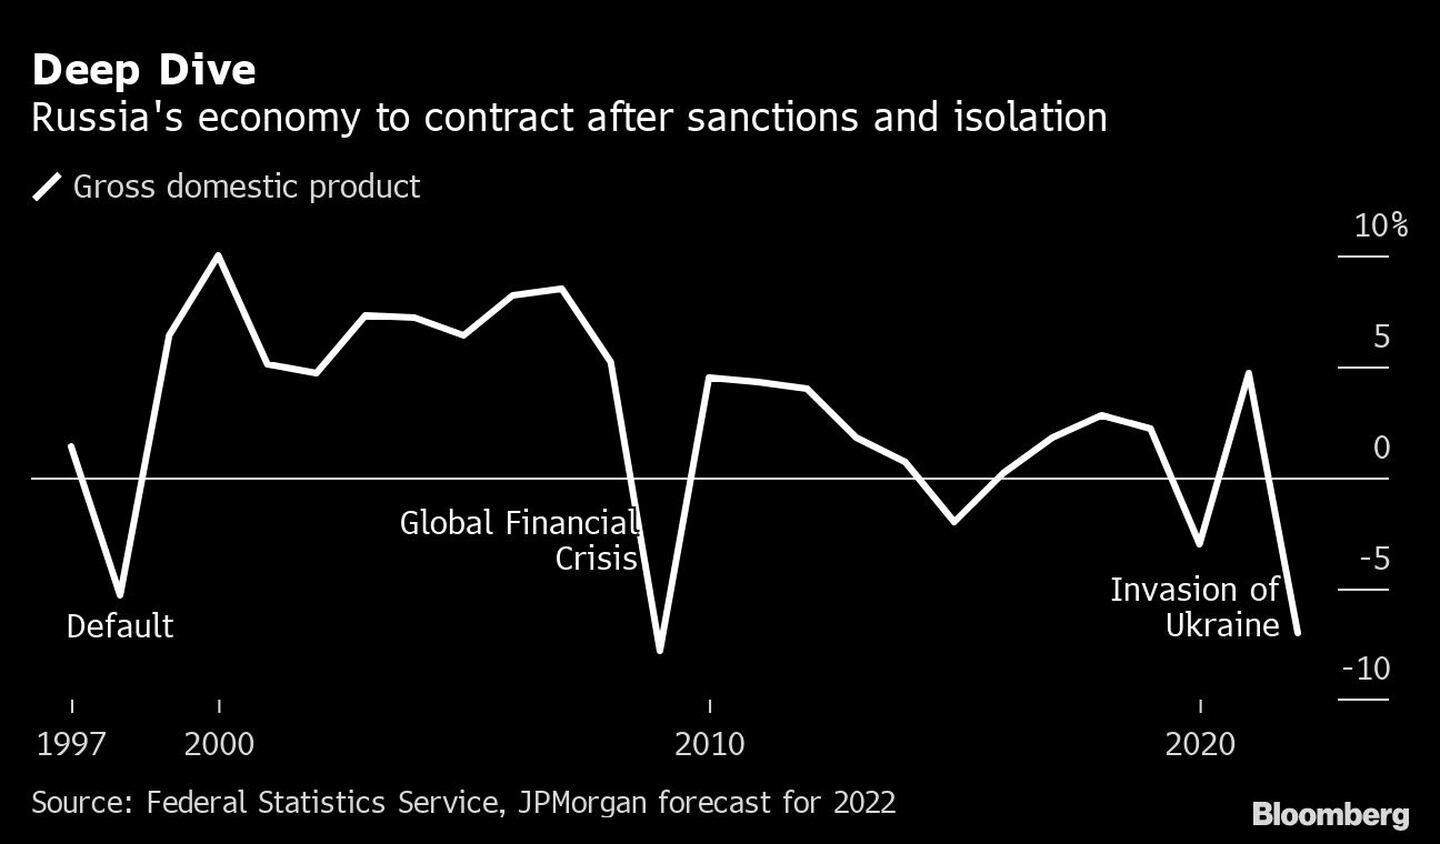 Mergulho profundo: a economia russa deve contrair após sanções e isolamentodfd